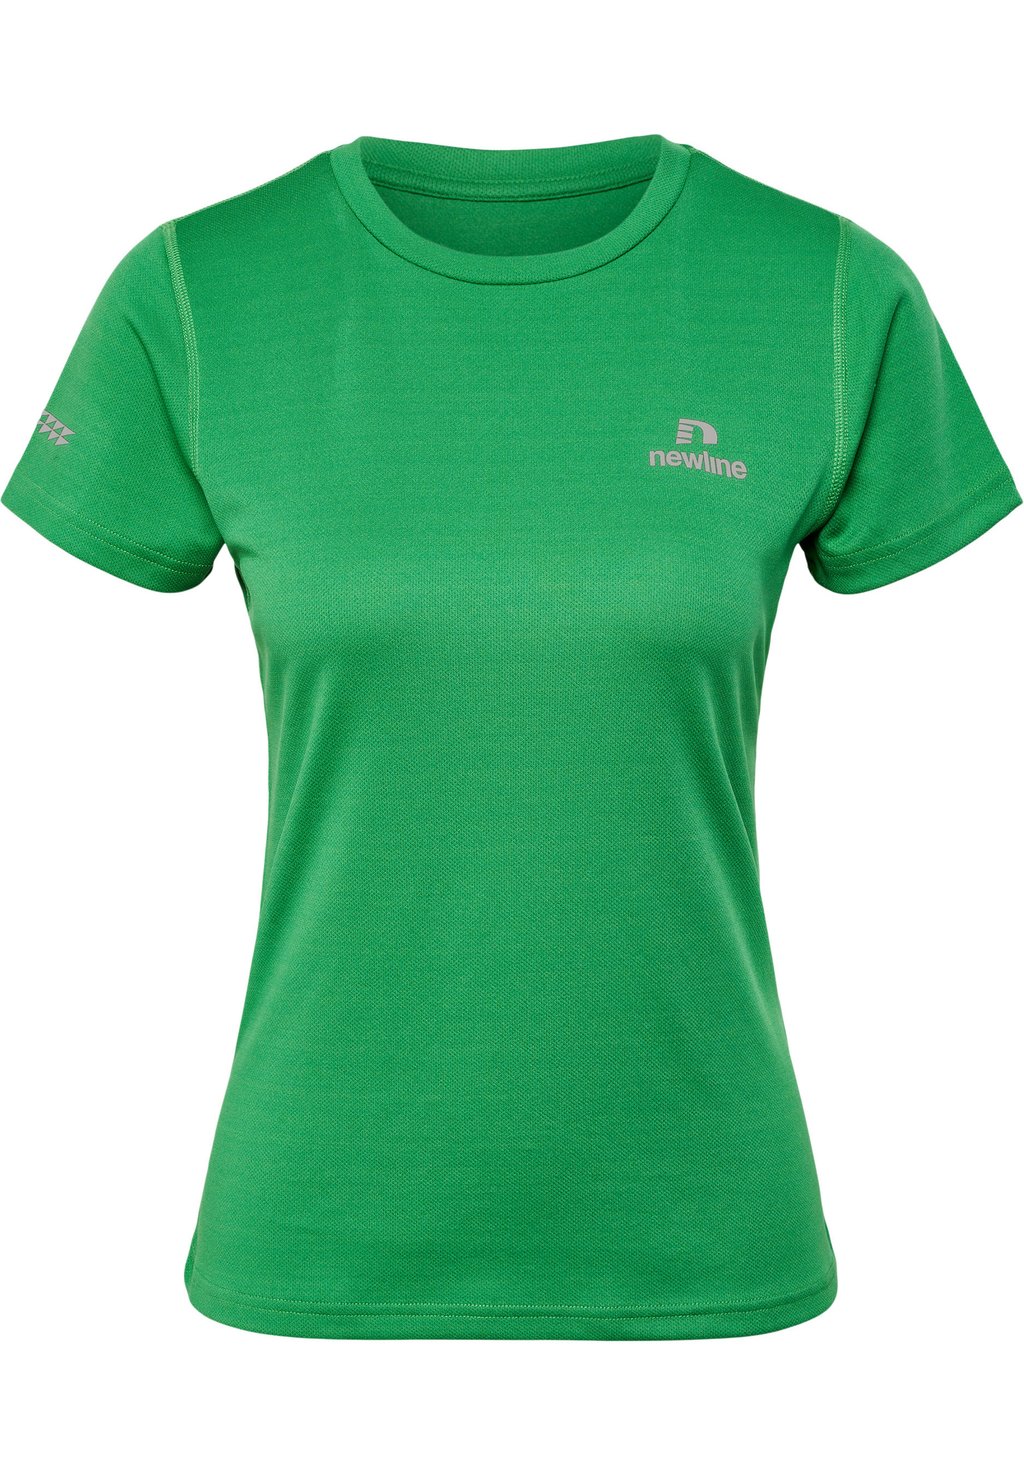 Базовая футболка Newline, зеленый